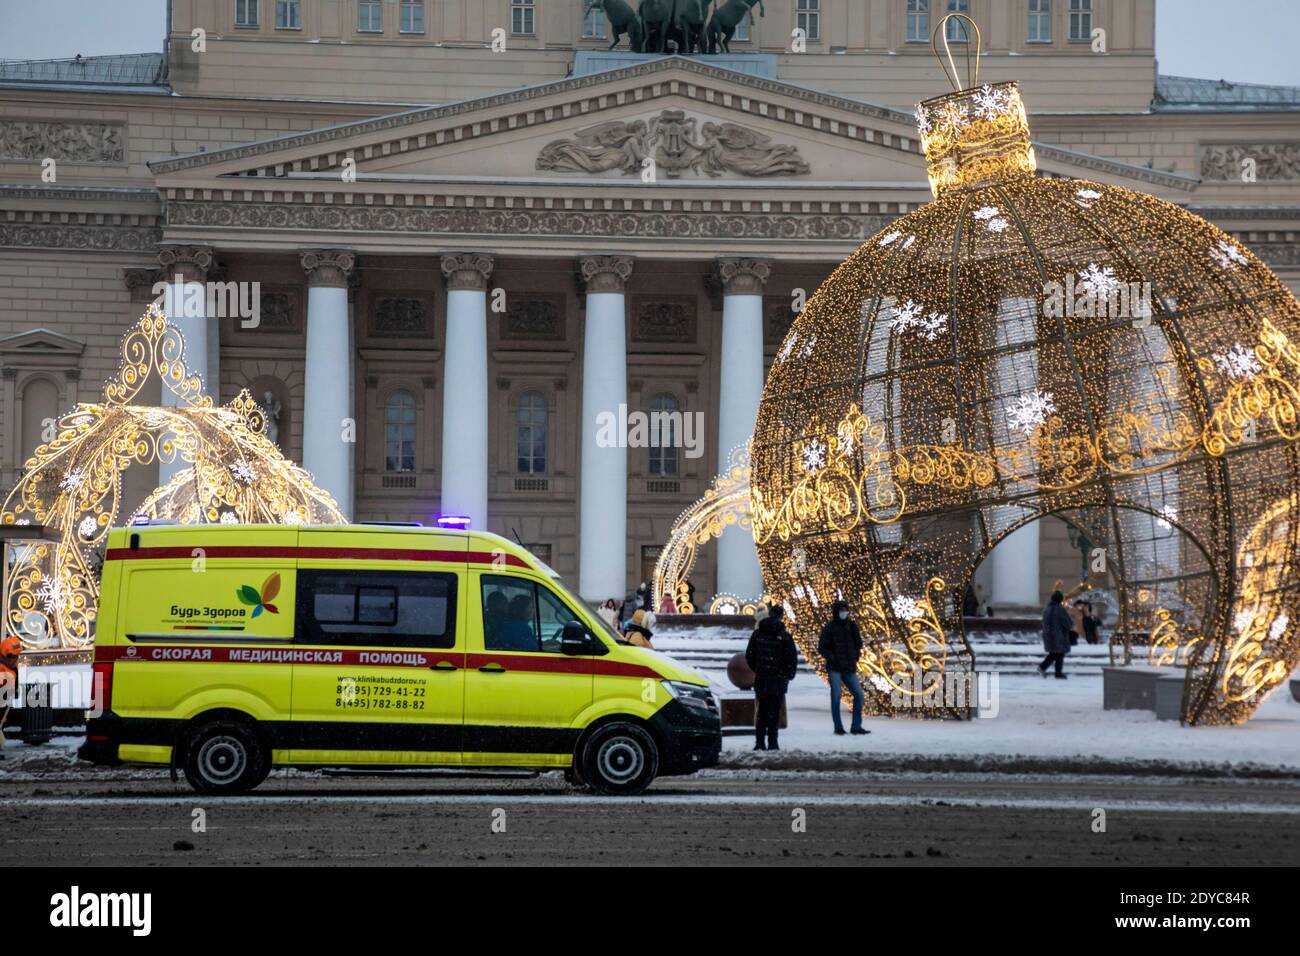 Mosca, Russia. 25 dicembre 2020 un'ambulanza corre lungo una strada nel centro di Mosca sullo sfondo della facciata del teatro Bolshoi alla vigilia di Capodanno, in Russia Foto Stock